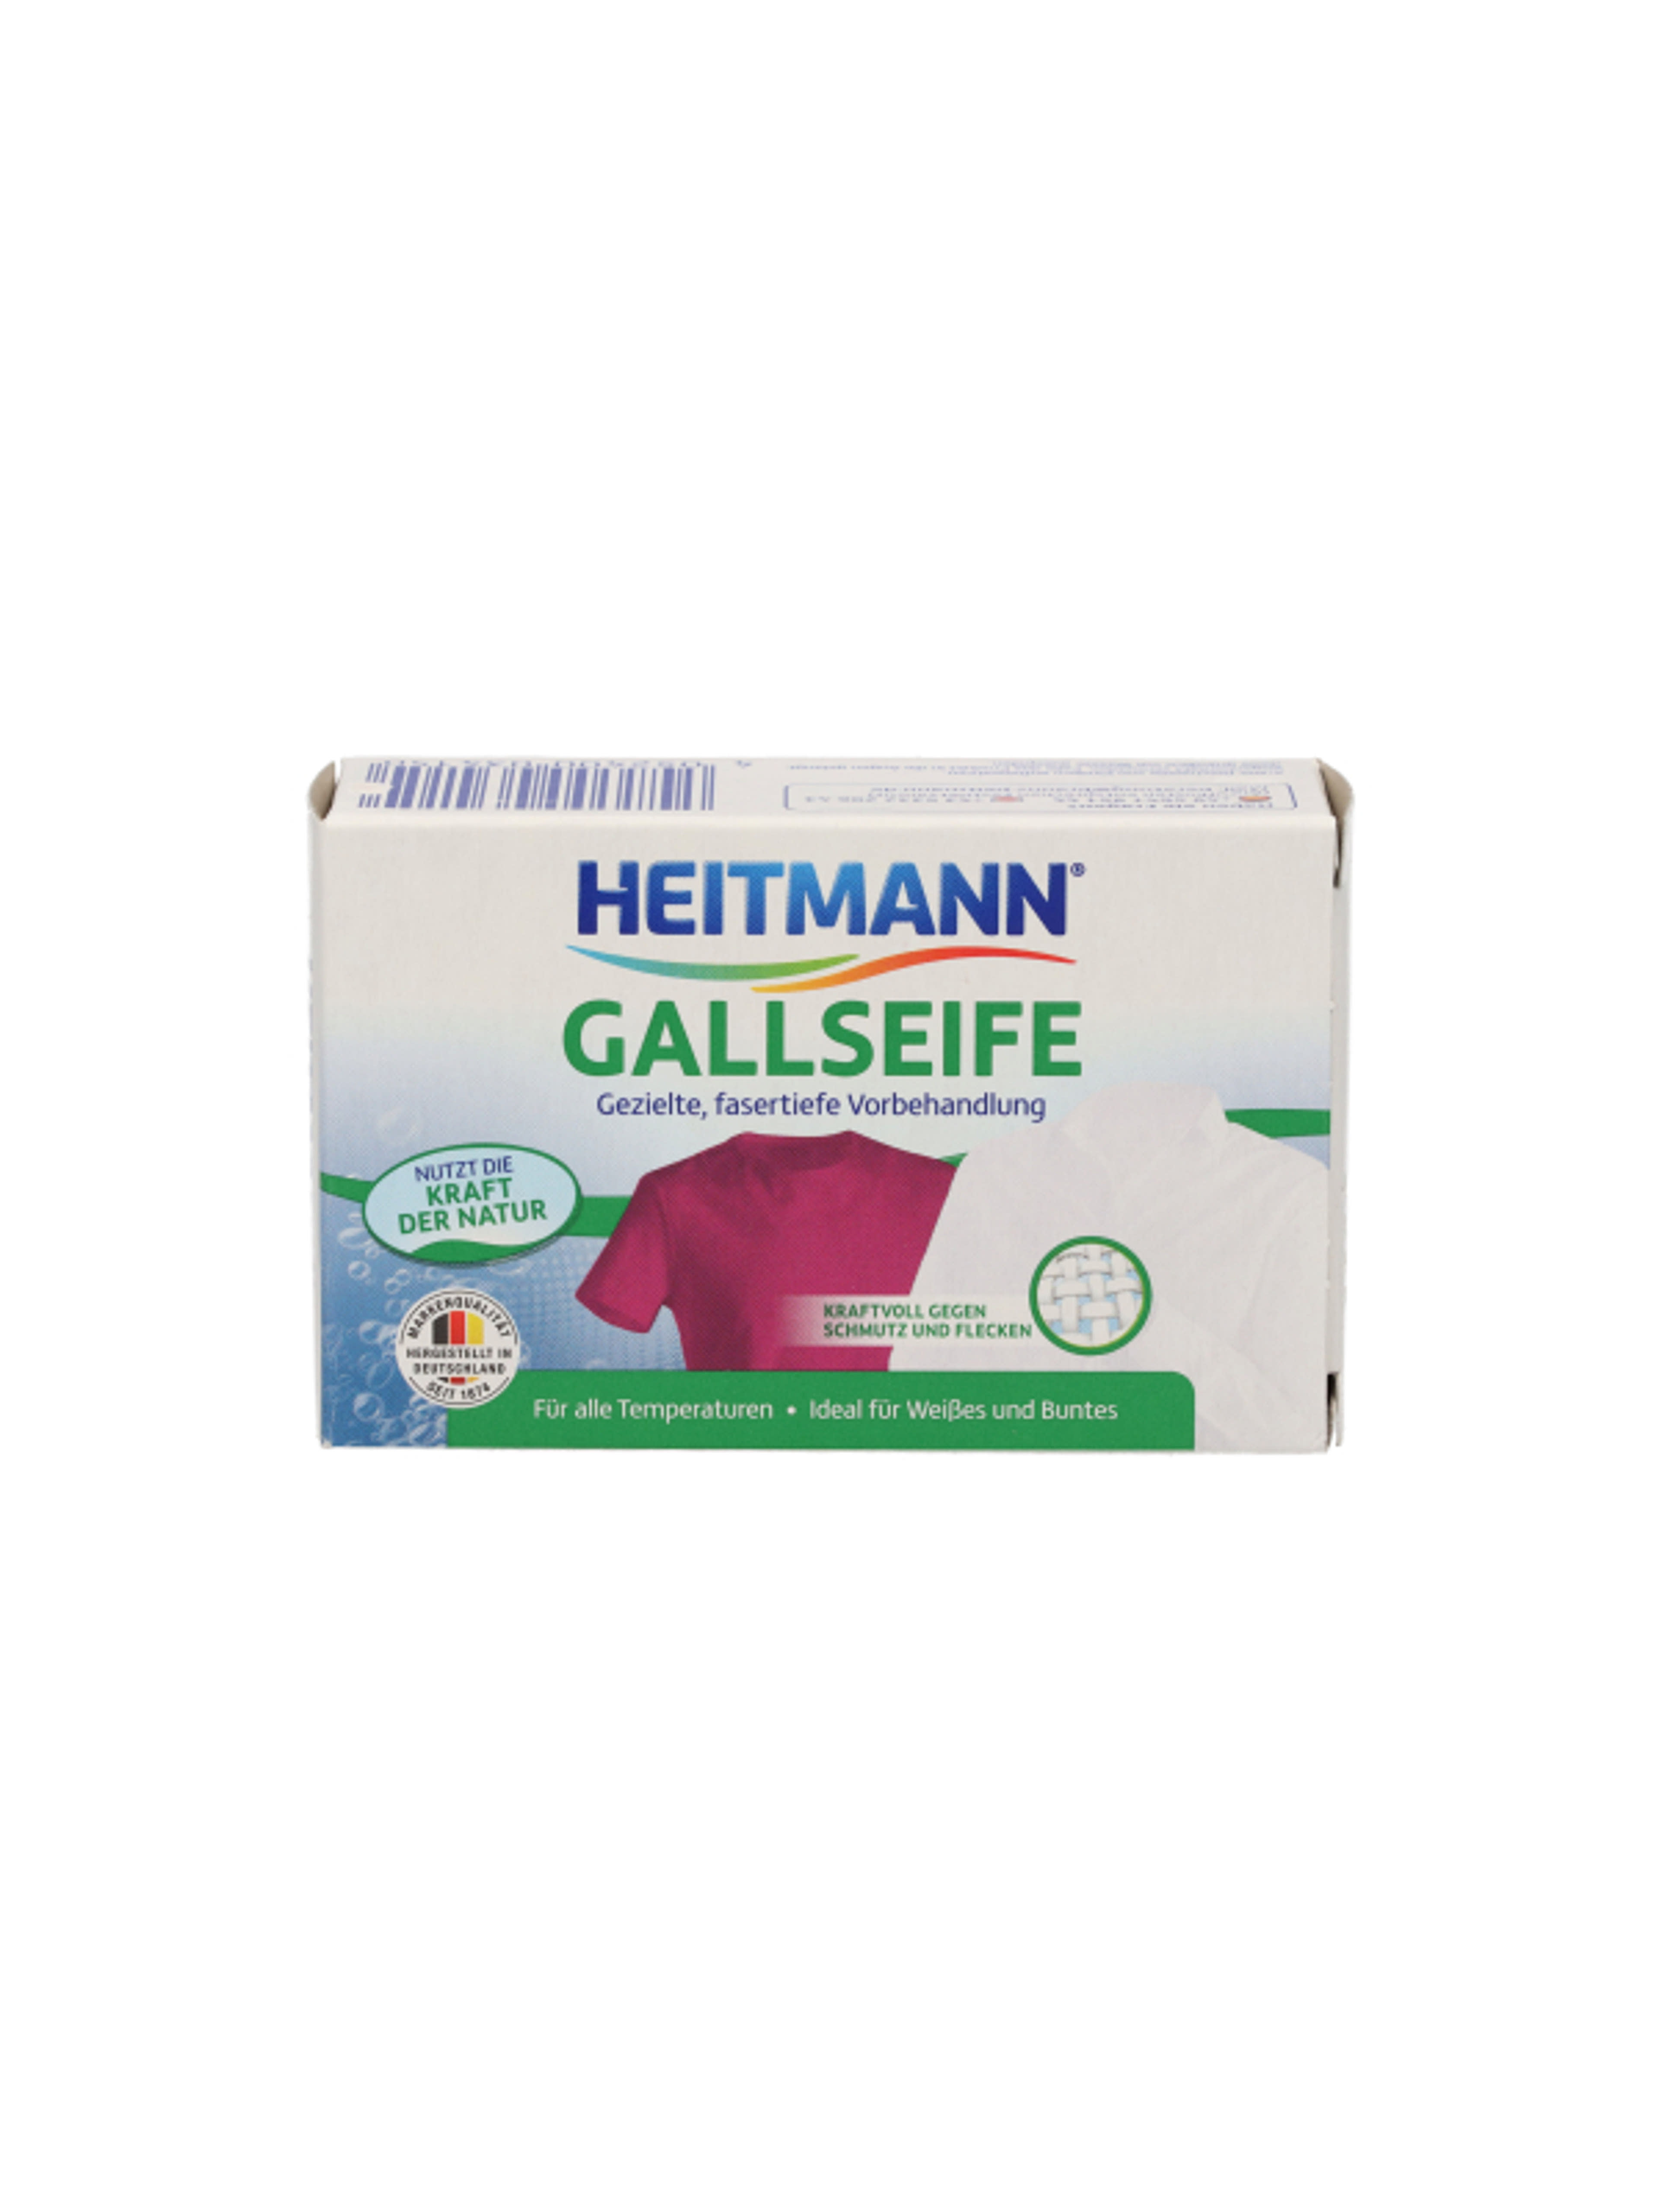 Heitmann folttisztító szappan - 100g